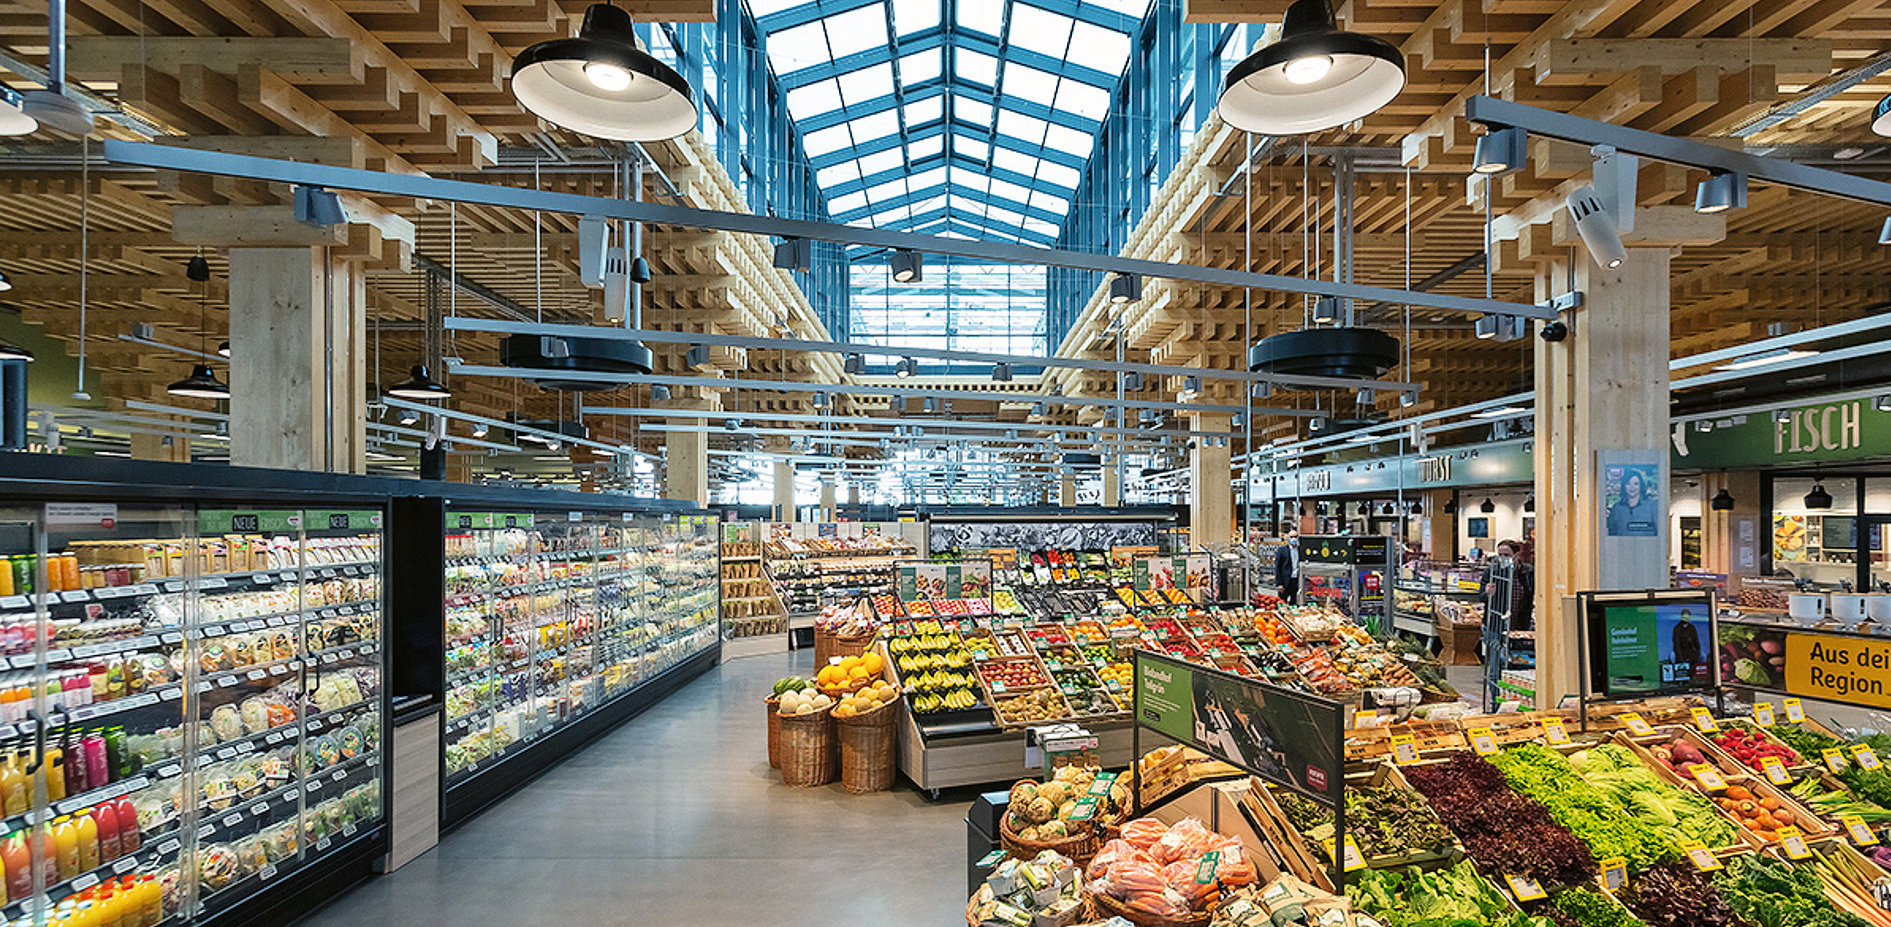 Le nouveau supermarché Rewe Wiesbaden (1 500 m2) en Allemagne accueille une ferme agricole sur son toit et un élevage de truites. Pour un circuit local et ultra court...  